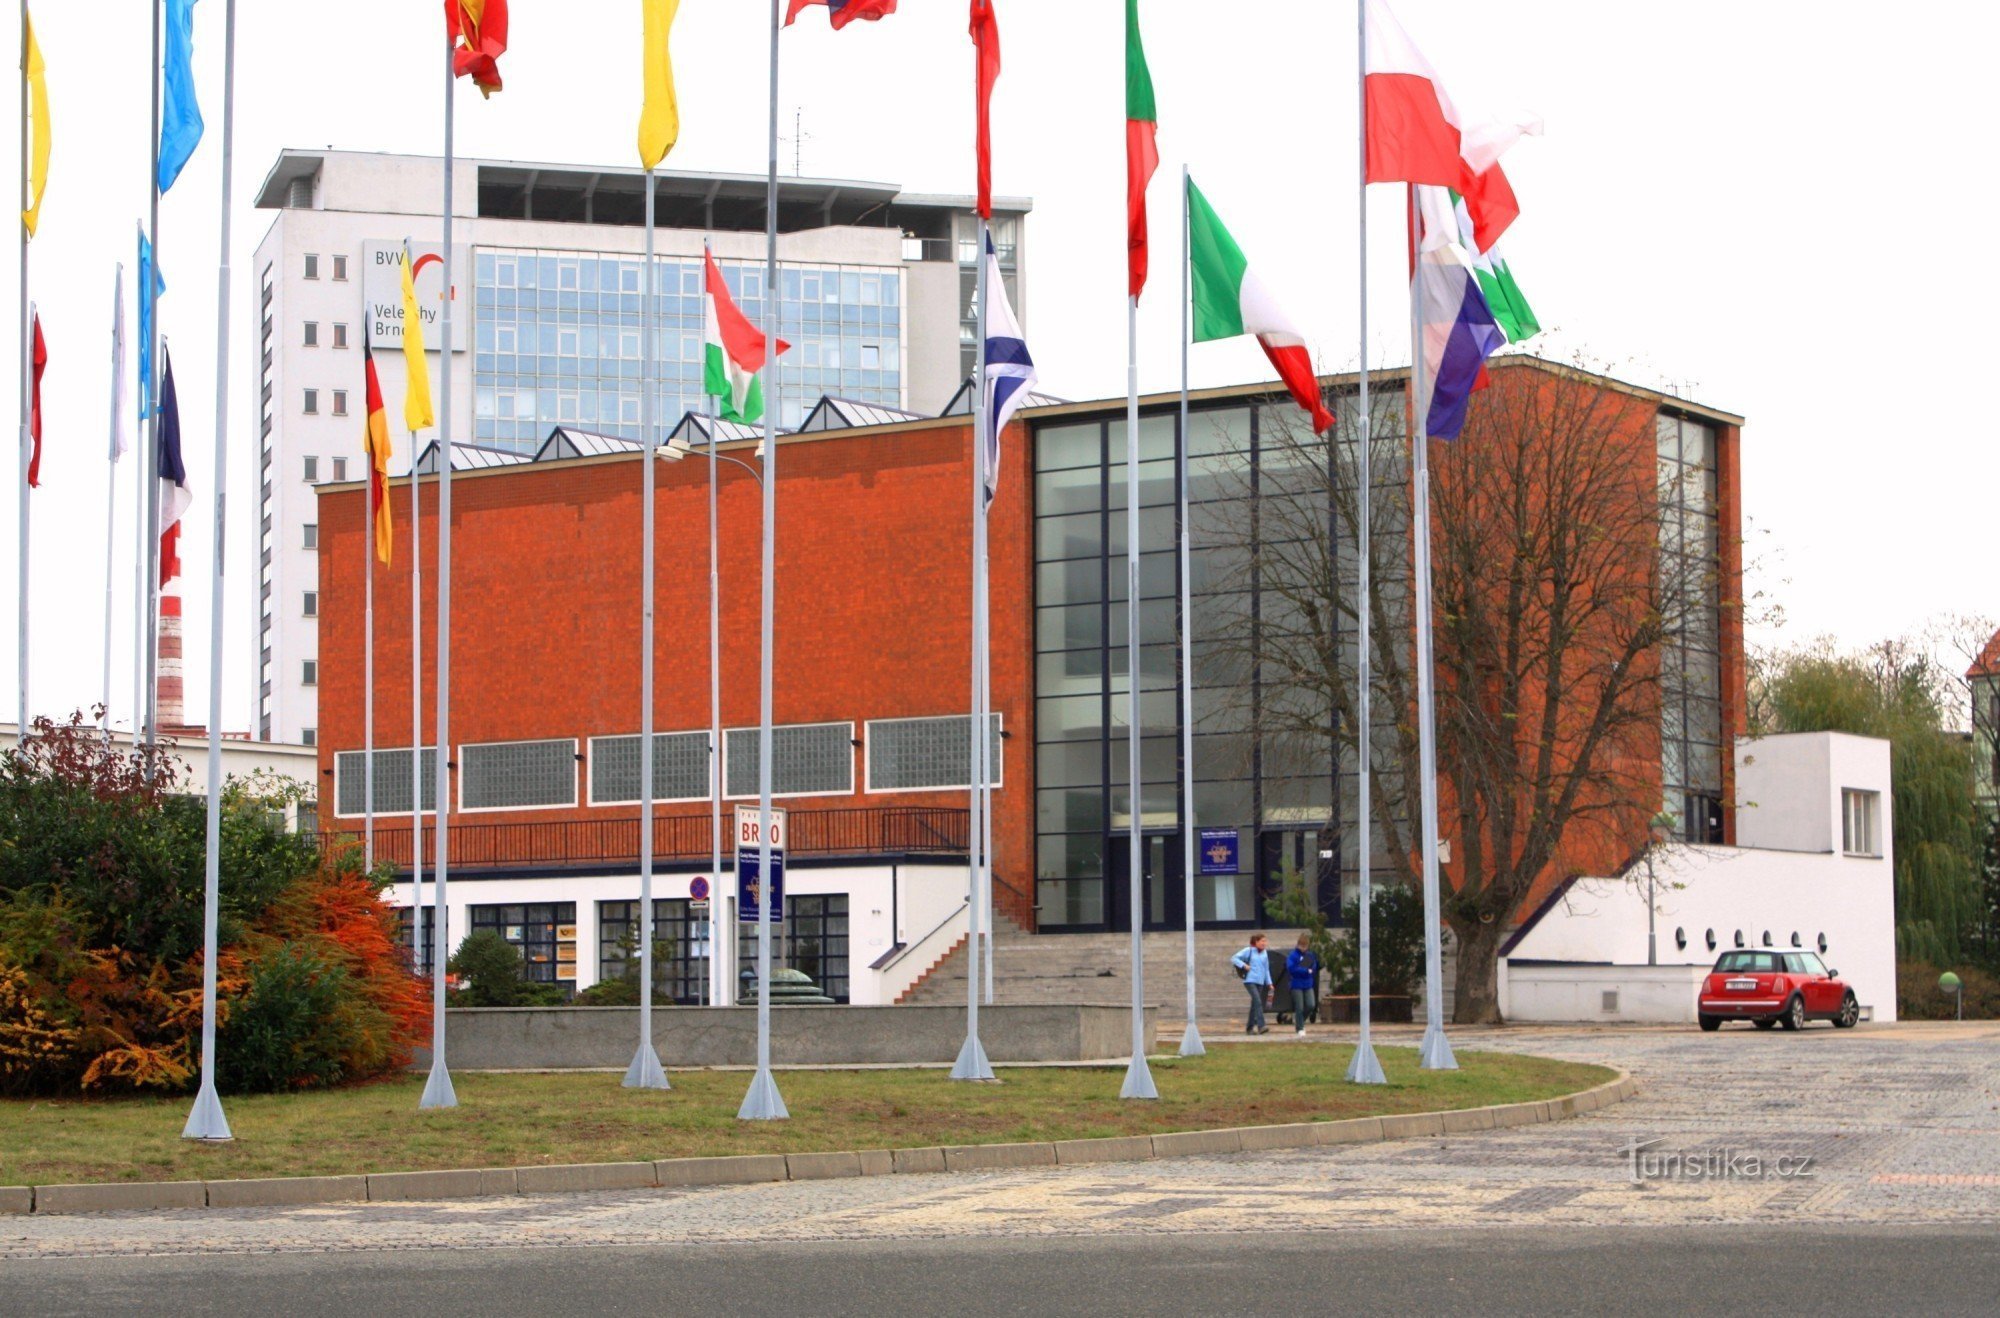 Brno Exhibition Center